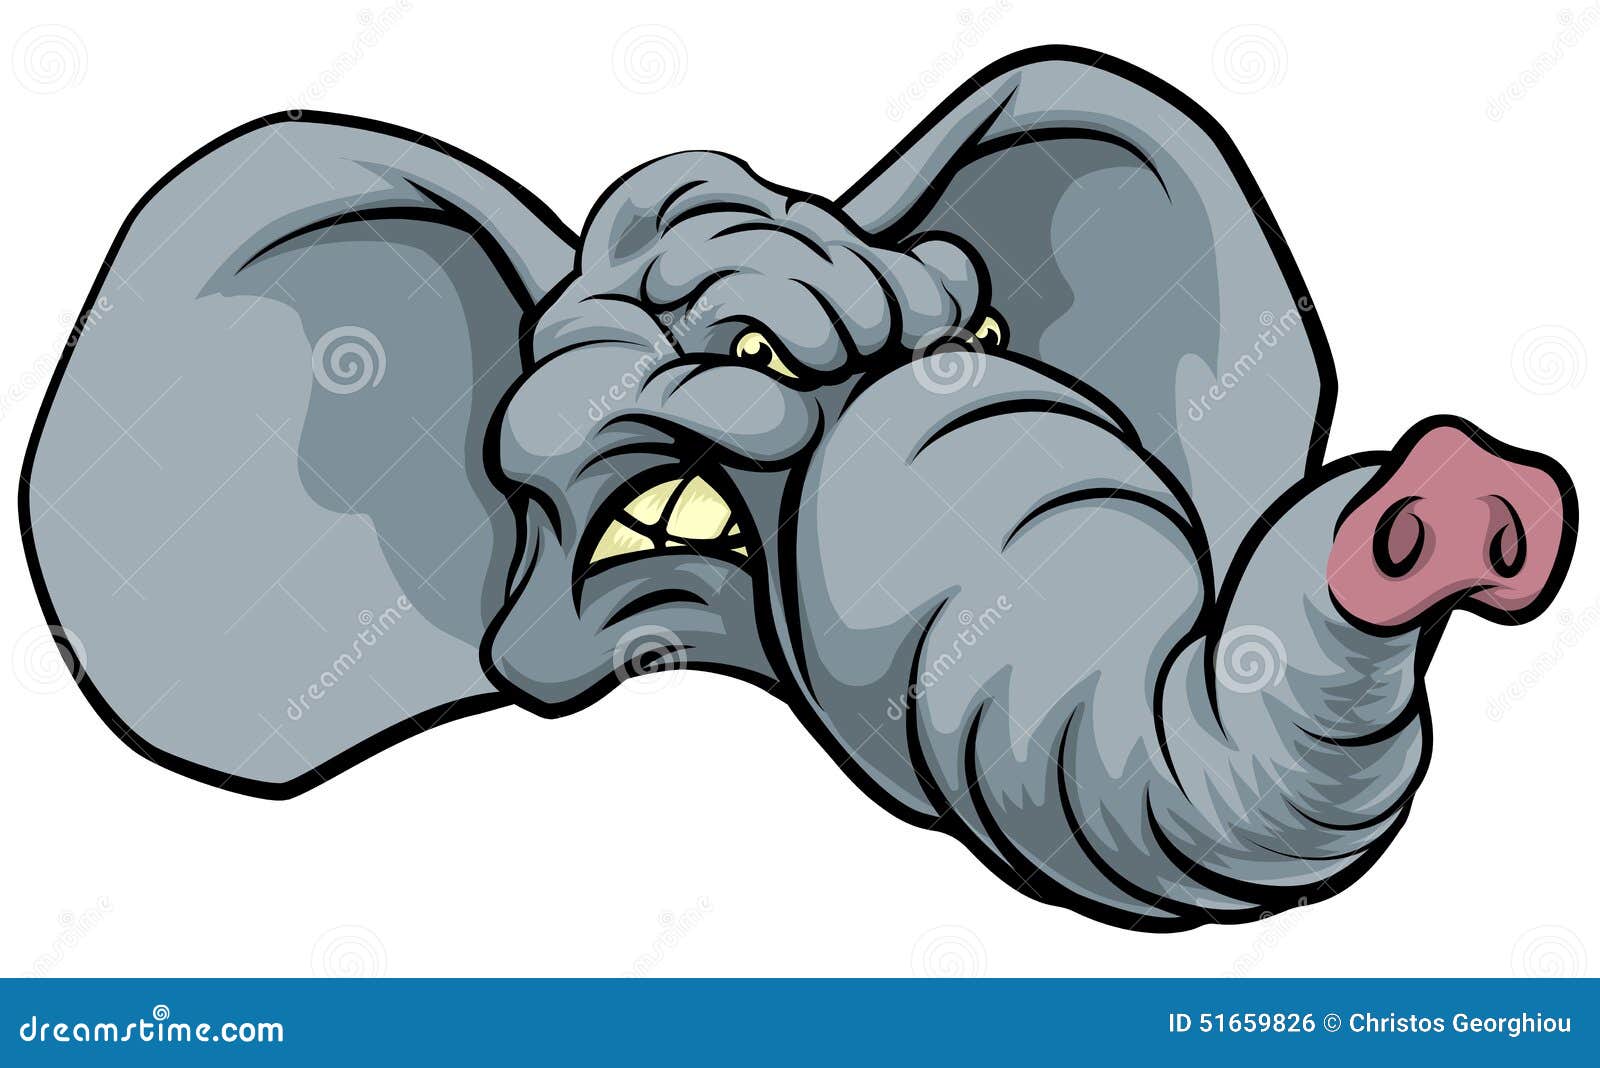 cartoon elephant mascot